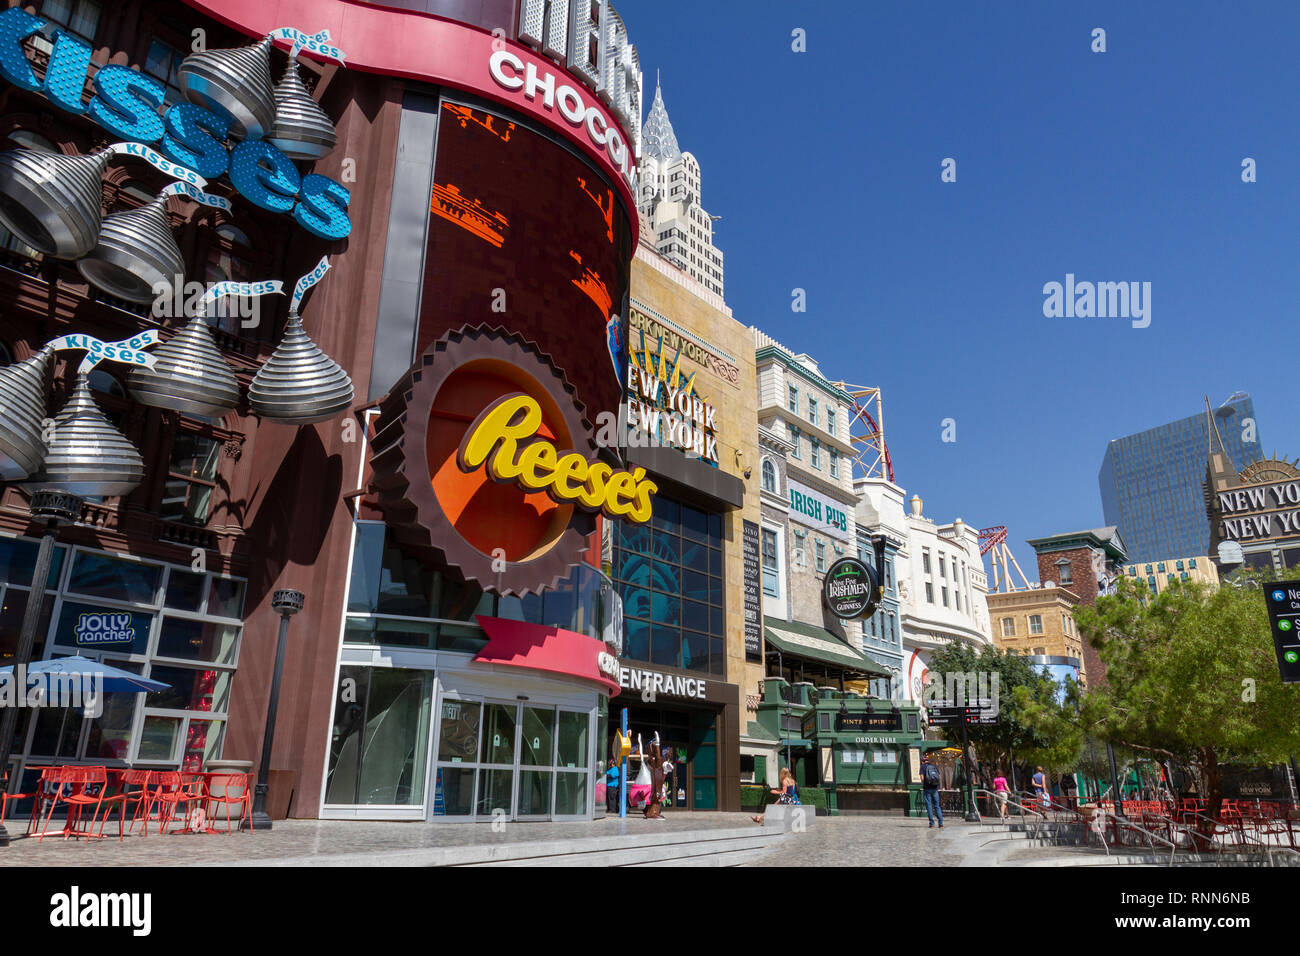 Il marciapiede area piena di negozi (Hershey's Chocolate World), parte del New York New York Strip di Las Vegas, Nevada, Stati Uniti. Foto Stock